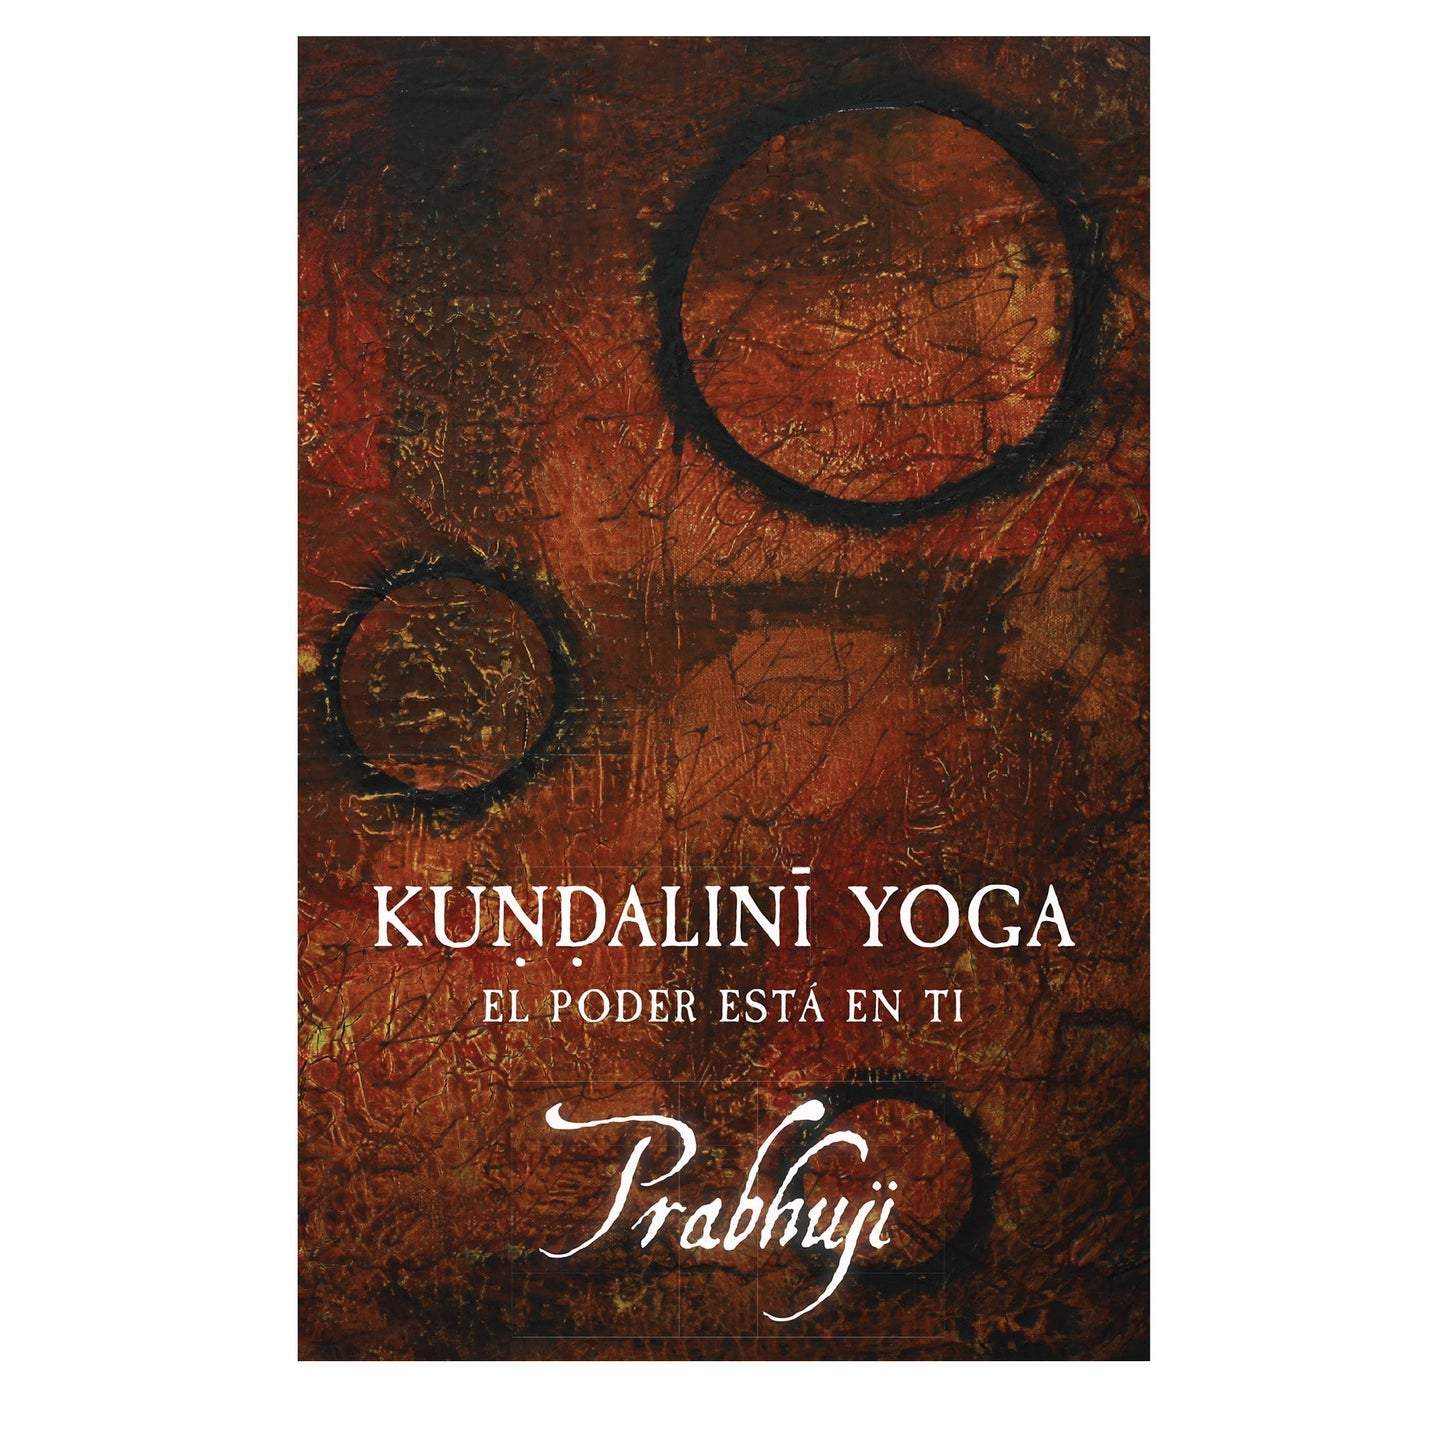 Kundalini yoga - el poder esta en ti by Prabhuji (Spanish) - Tree Spirit Wellness